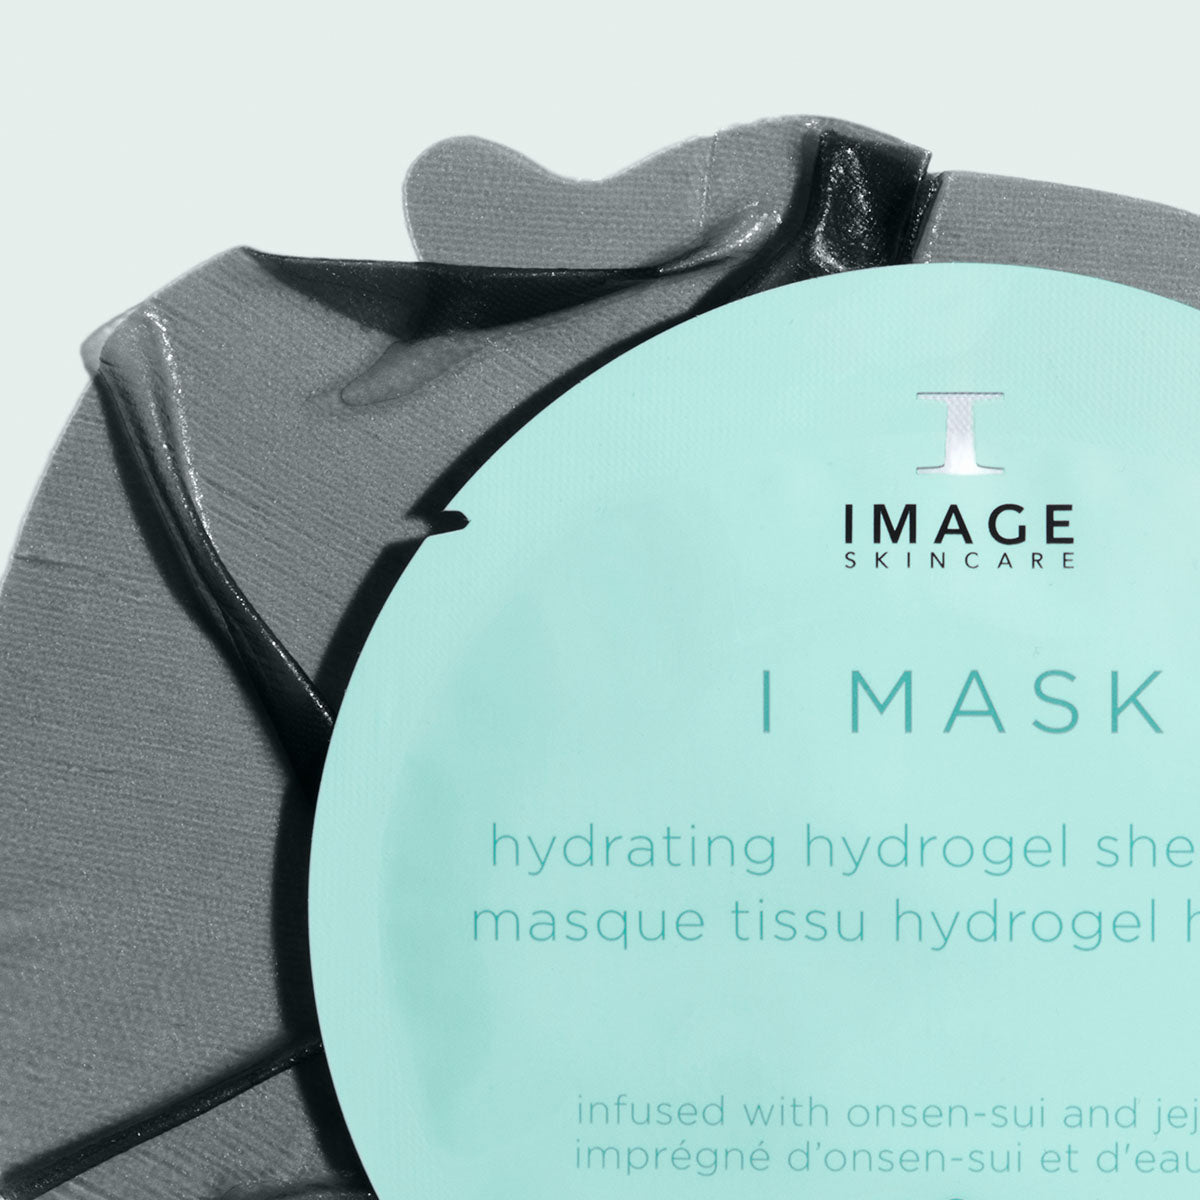 ♥️ IMAGE SKINCARE I MASK hydrating hydrogel sheet mask (single)